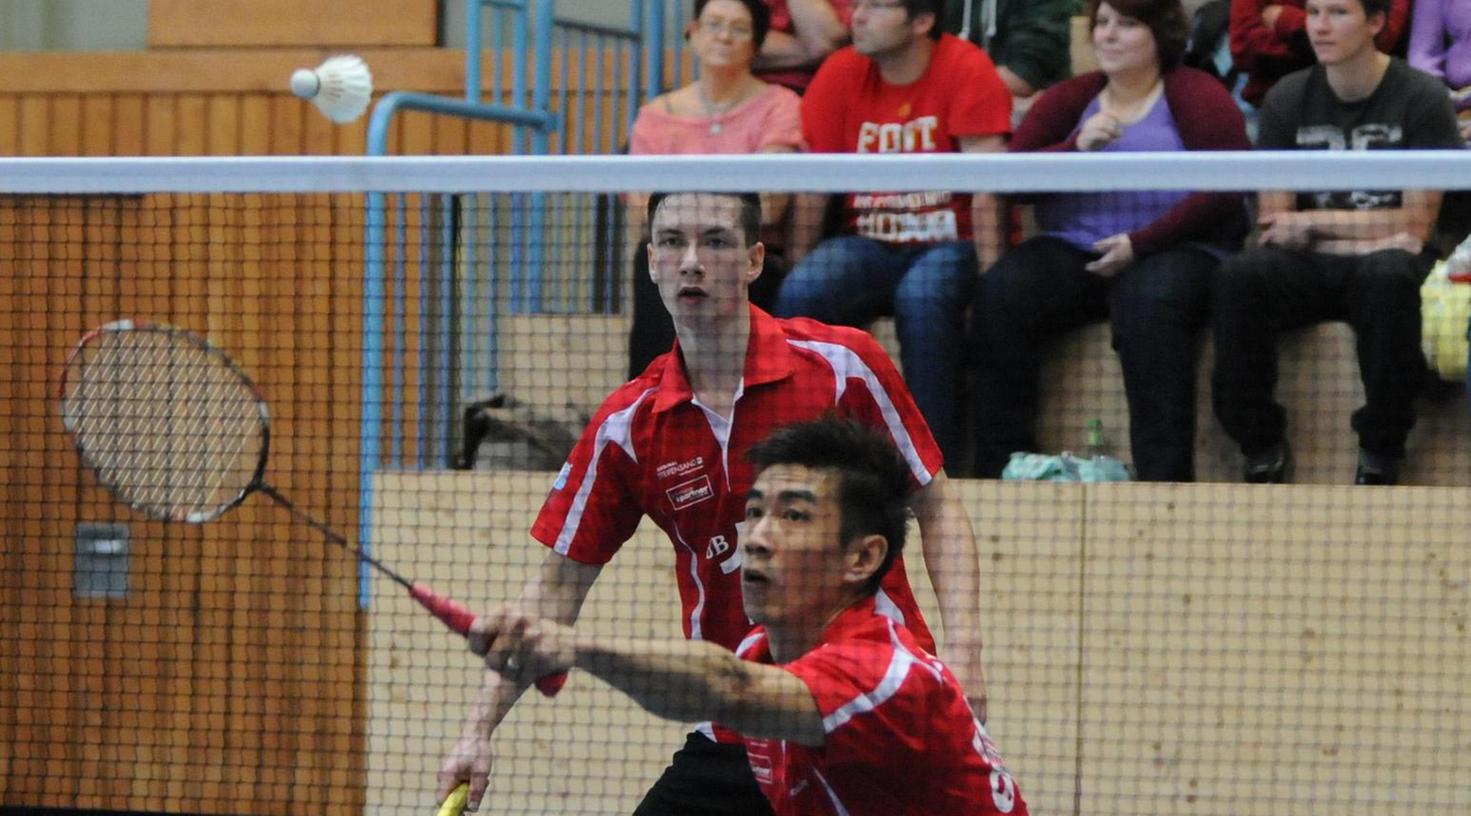 Badminton: Tai spielt mit Gegner Katz und Maus